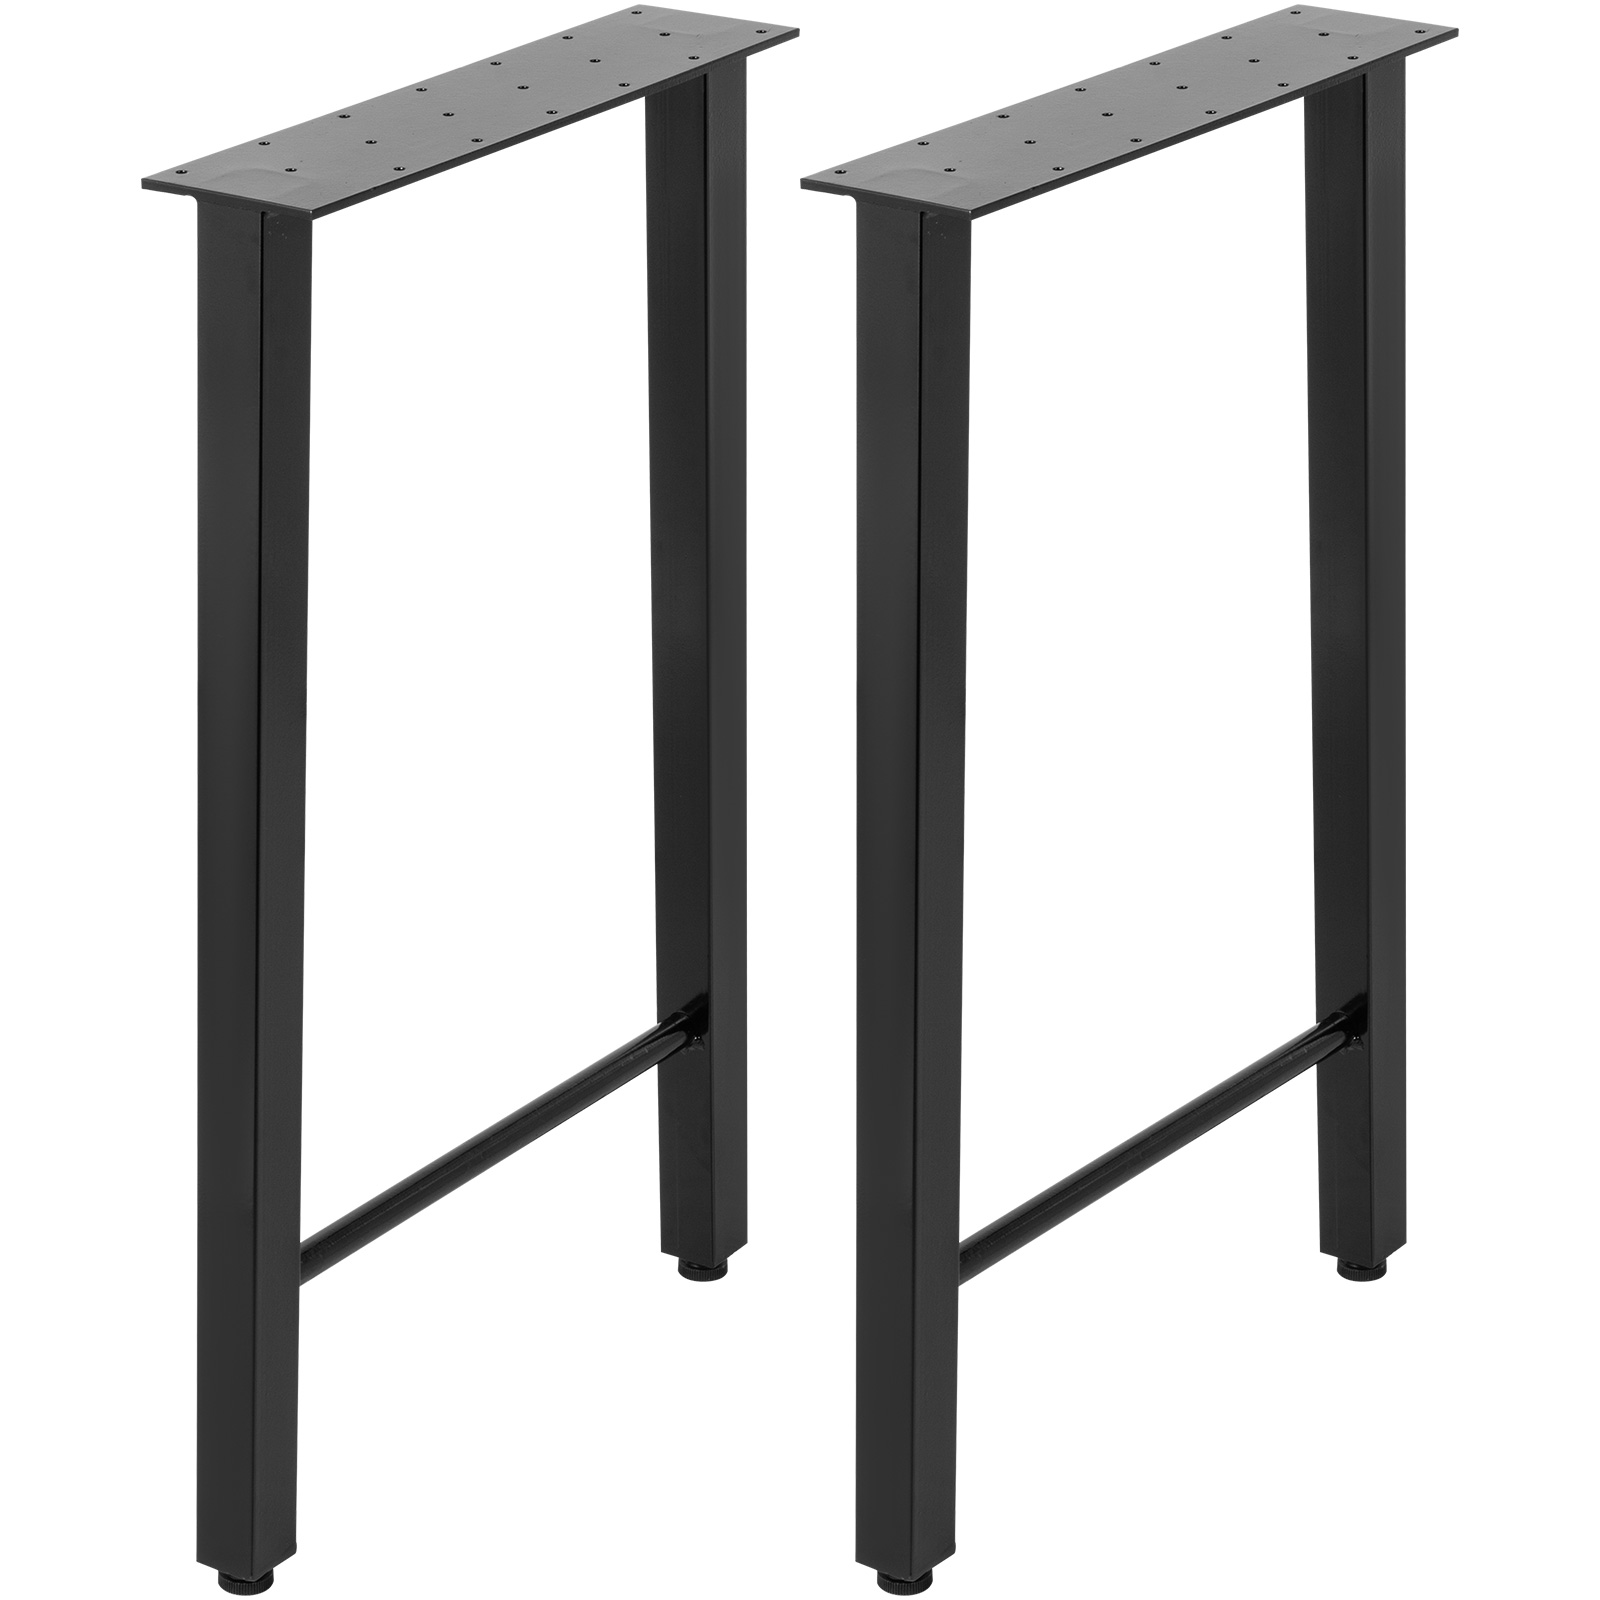 Table legs Piedini per mobili Piedini di Supporto Dimensioni: 3 cm Gambe del Mobile Piedini Quadri 